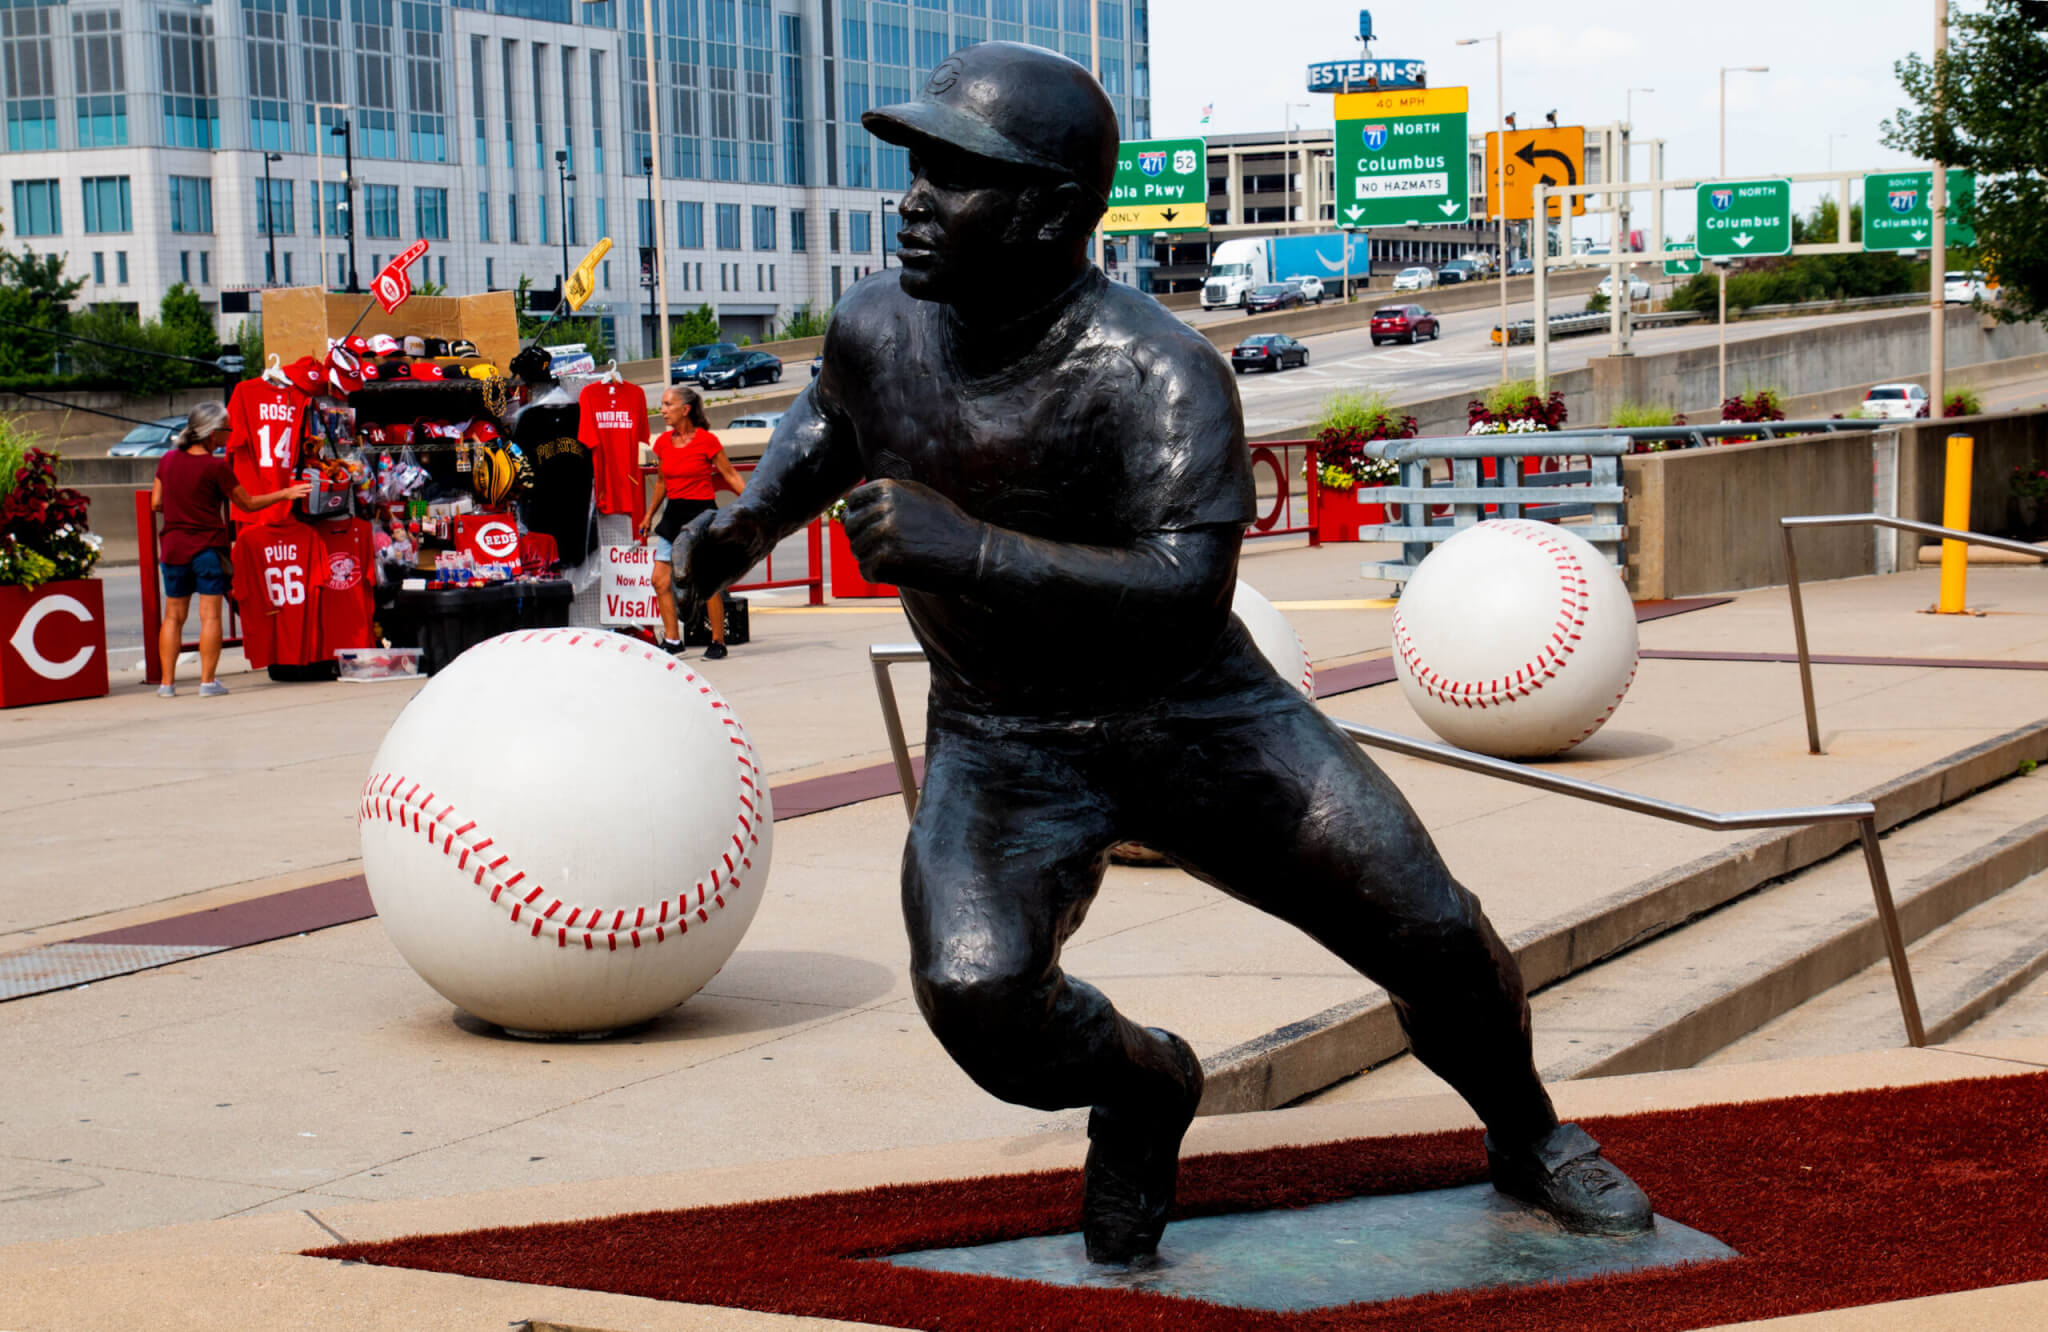 Statue of Joe Moran at the Great American Ballpark in Cincinnati 